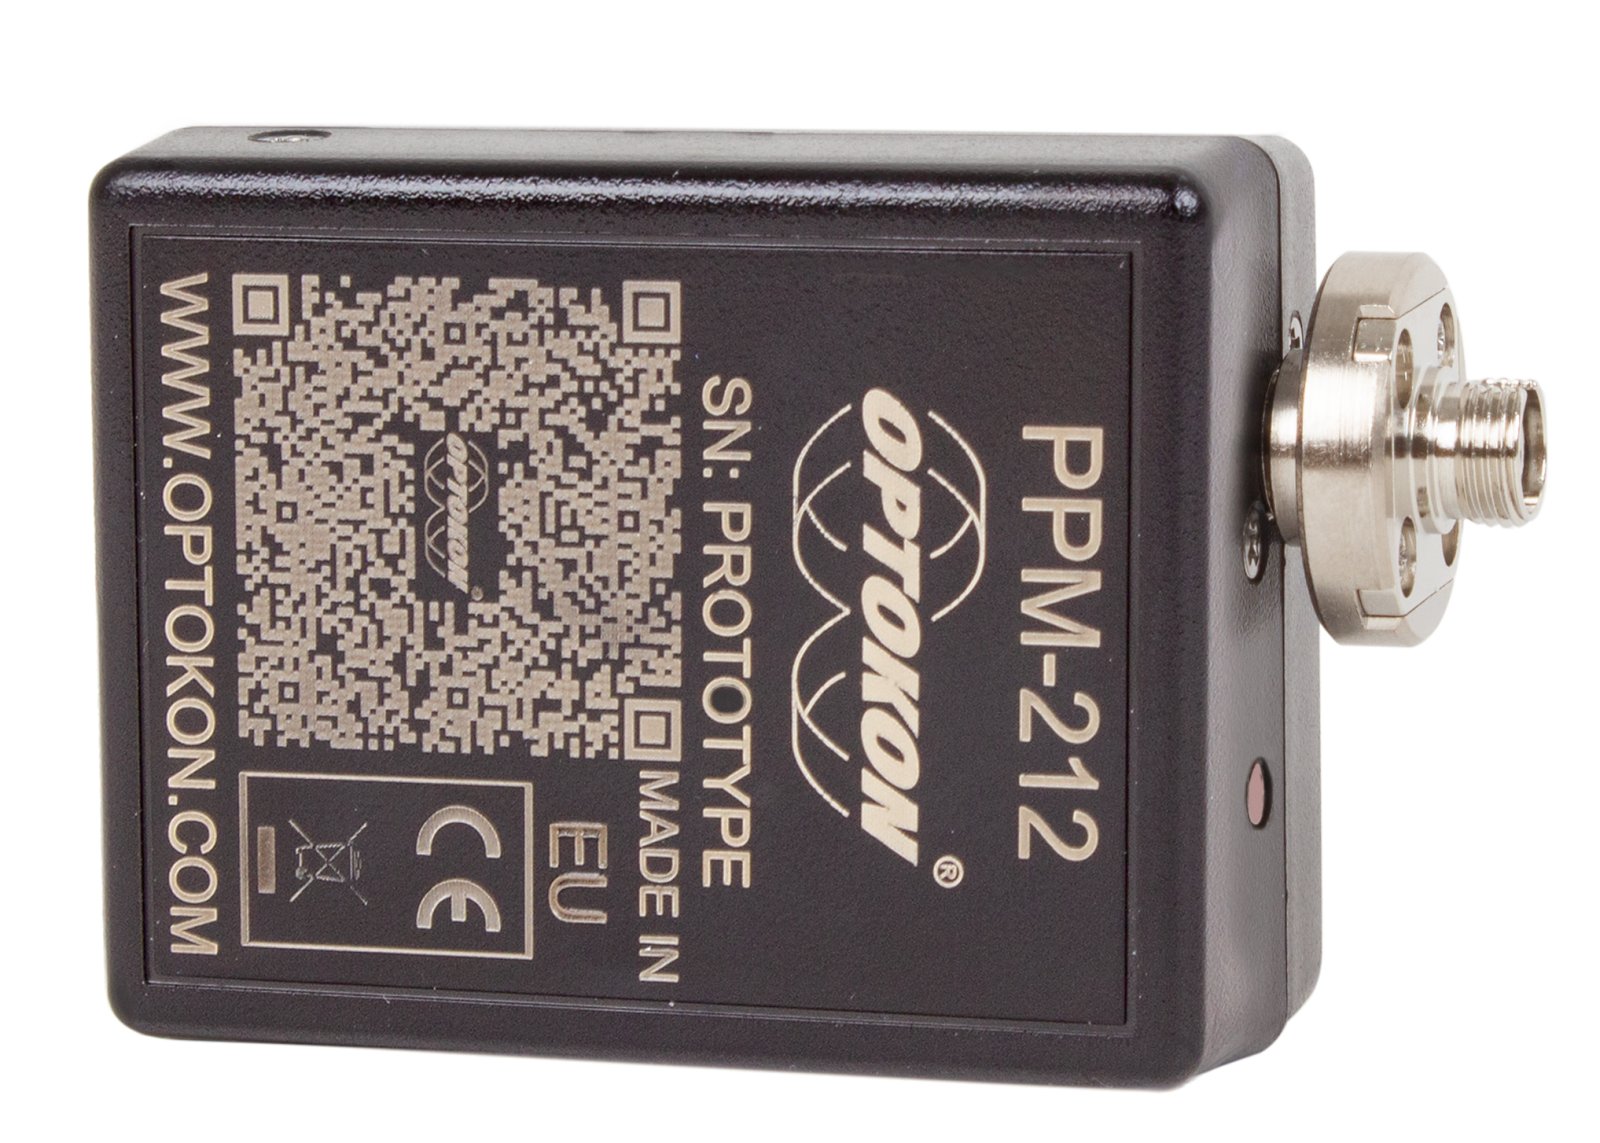 PPM-212 Pocket optical power meter USB probe